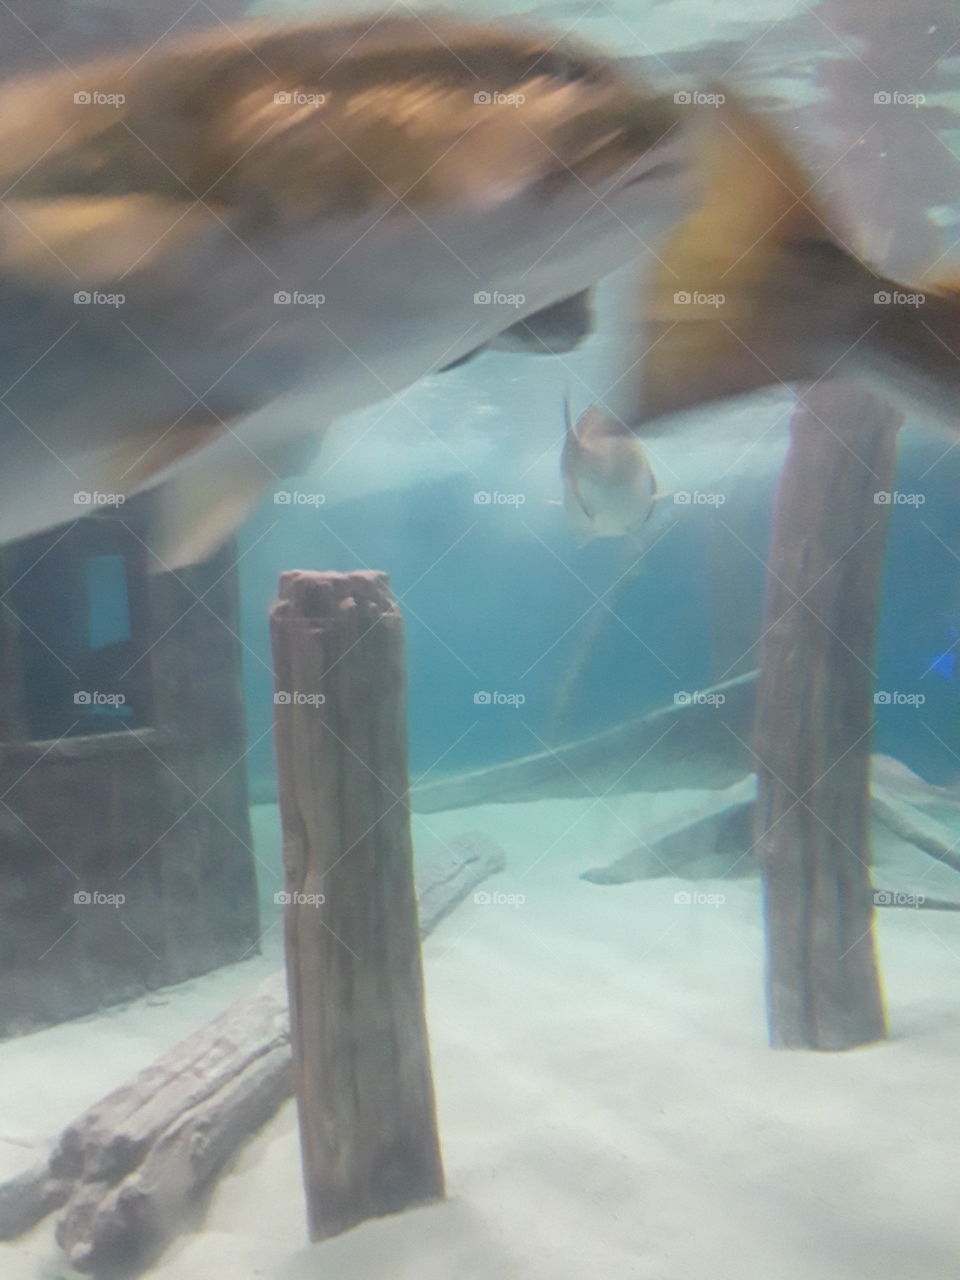 underwater fish aquarium with boat